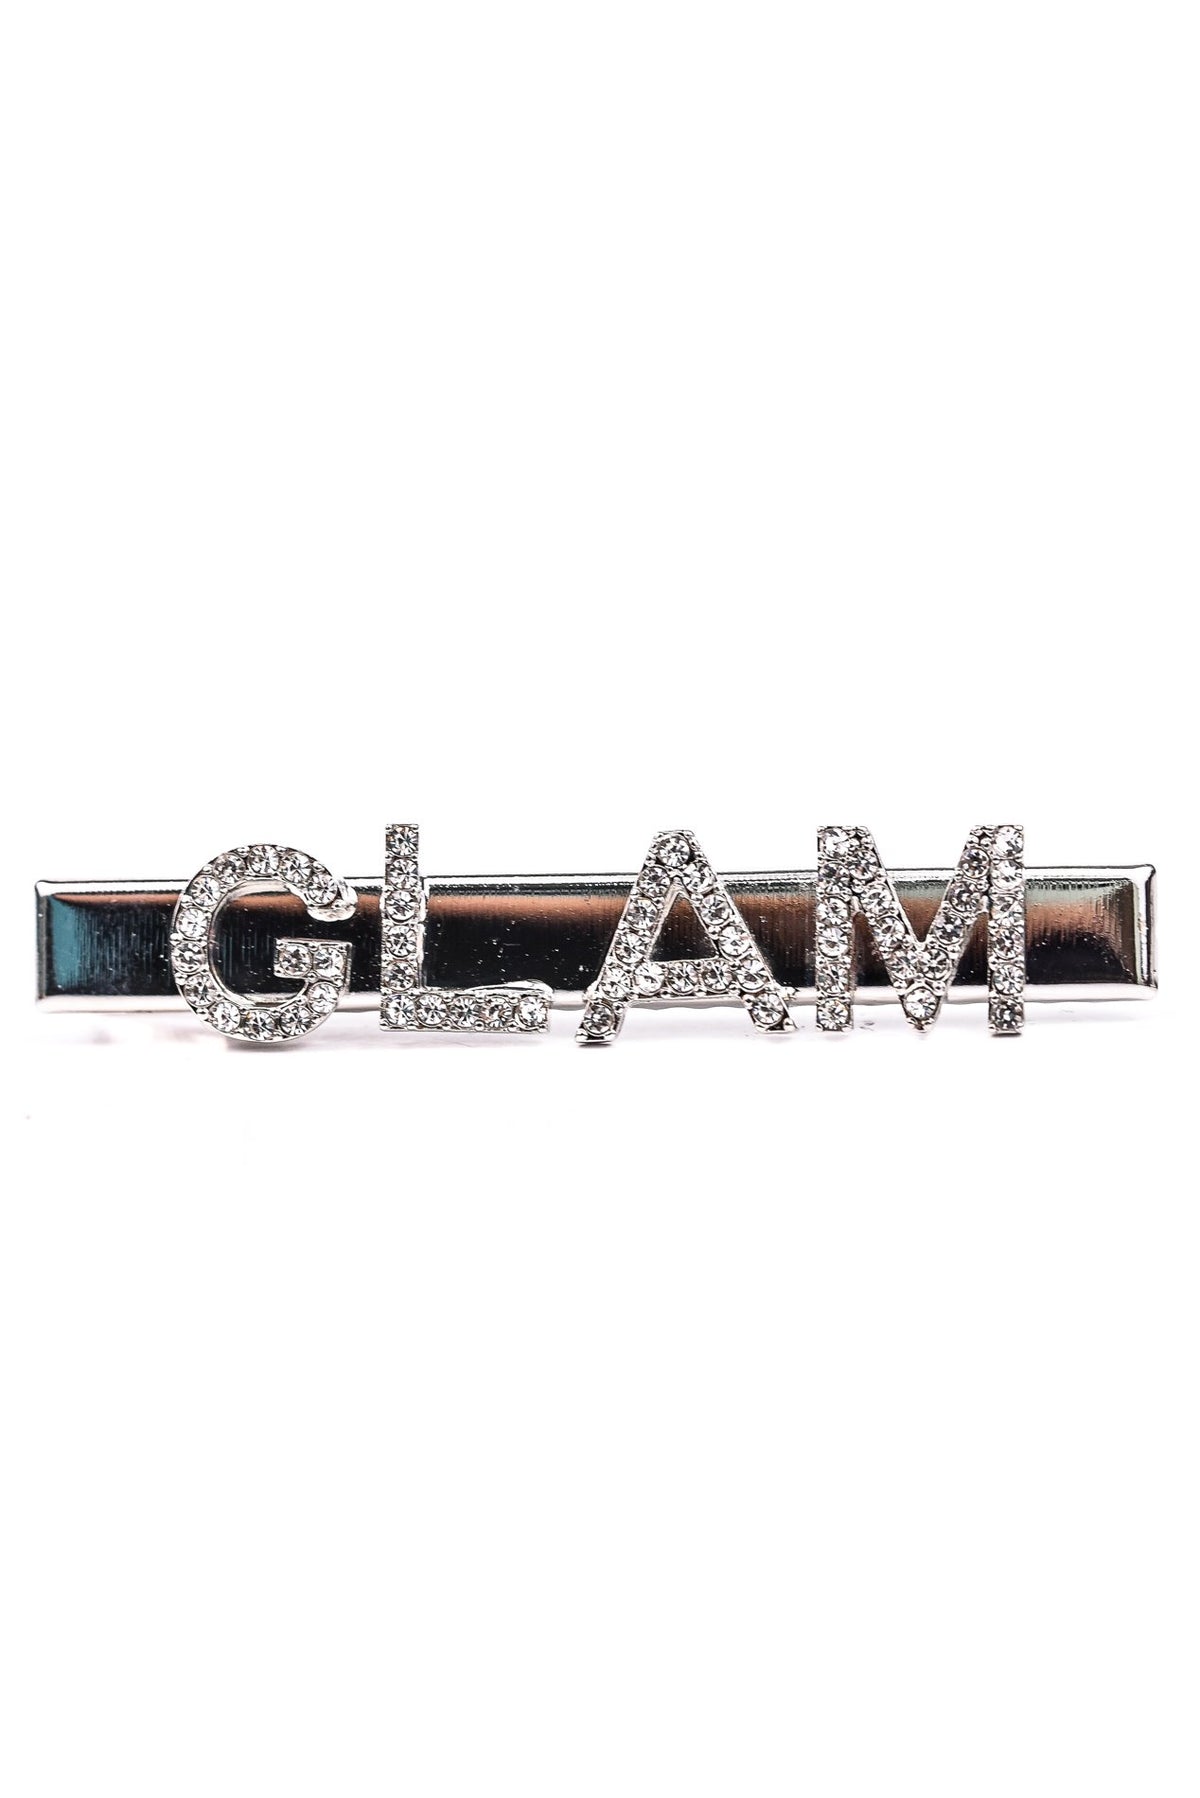 'Glam' Silver Bling Hair Clip - CLP172SI